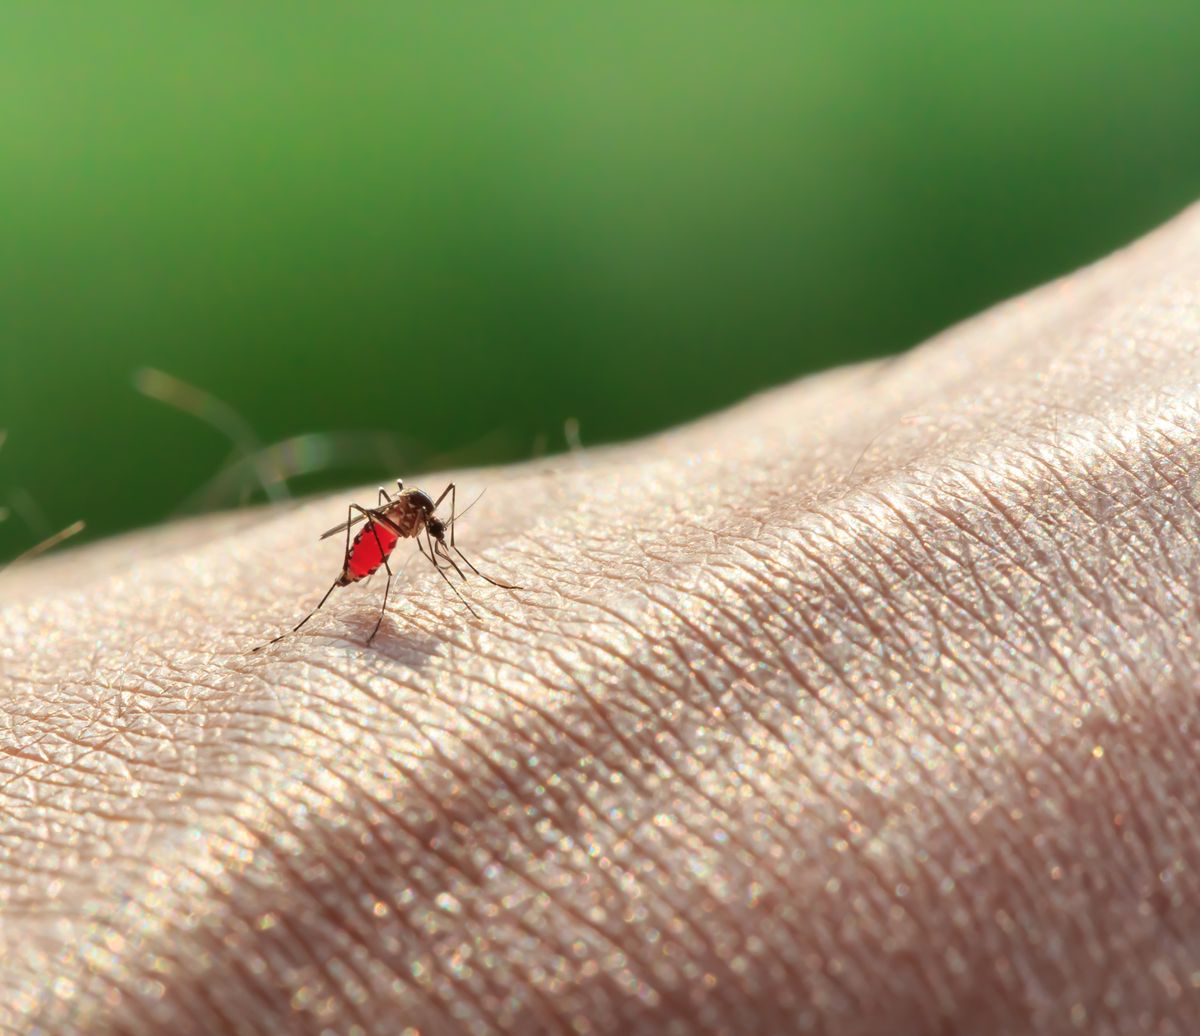 Skąd się wzięła plaga komarów? Nie mamy dobrych wiadomości - będzie jeszcze gorzej